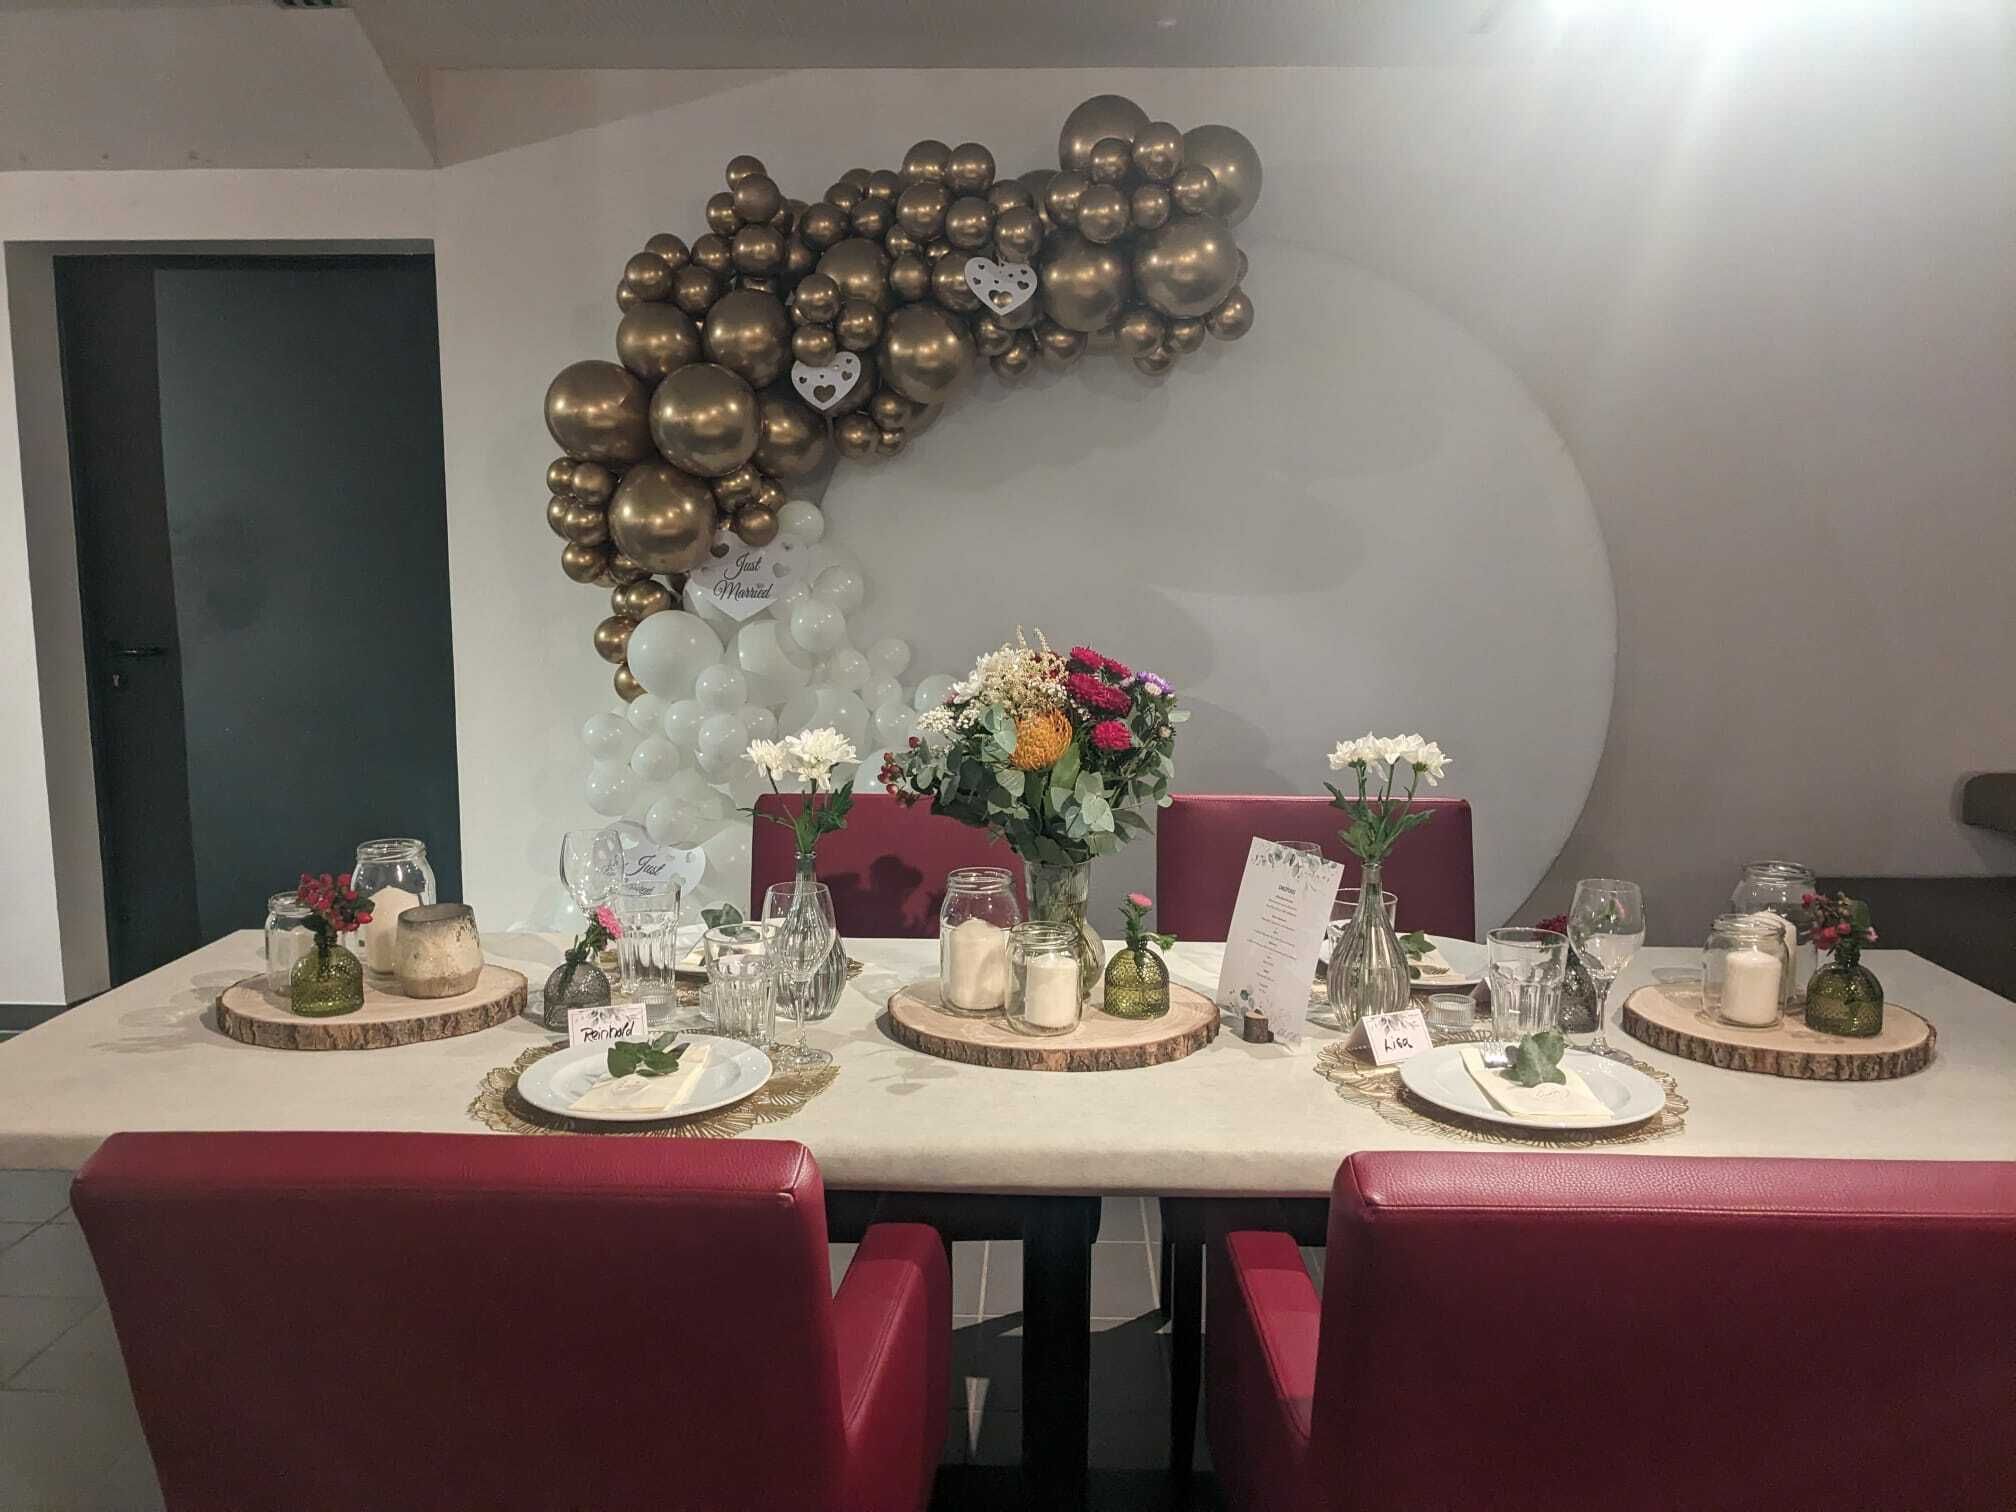 Auf dem Bild wird der Tisch eines Brautpaares gezeigt, festlich gedeckt mit Blumen und Kerzen und im Hintergrund hängt eine Ballongirlande mit goldglänzende und weißen Luftballons und einem Hinweistext "Just married". 